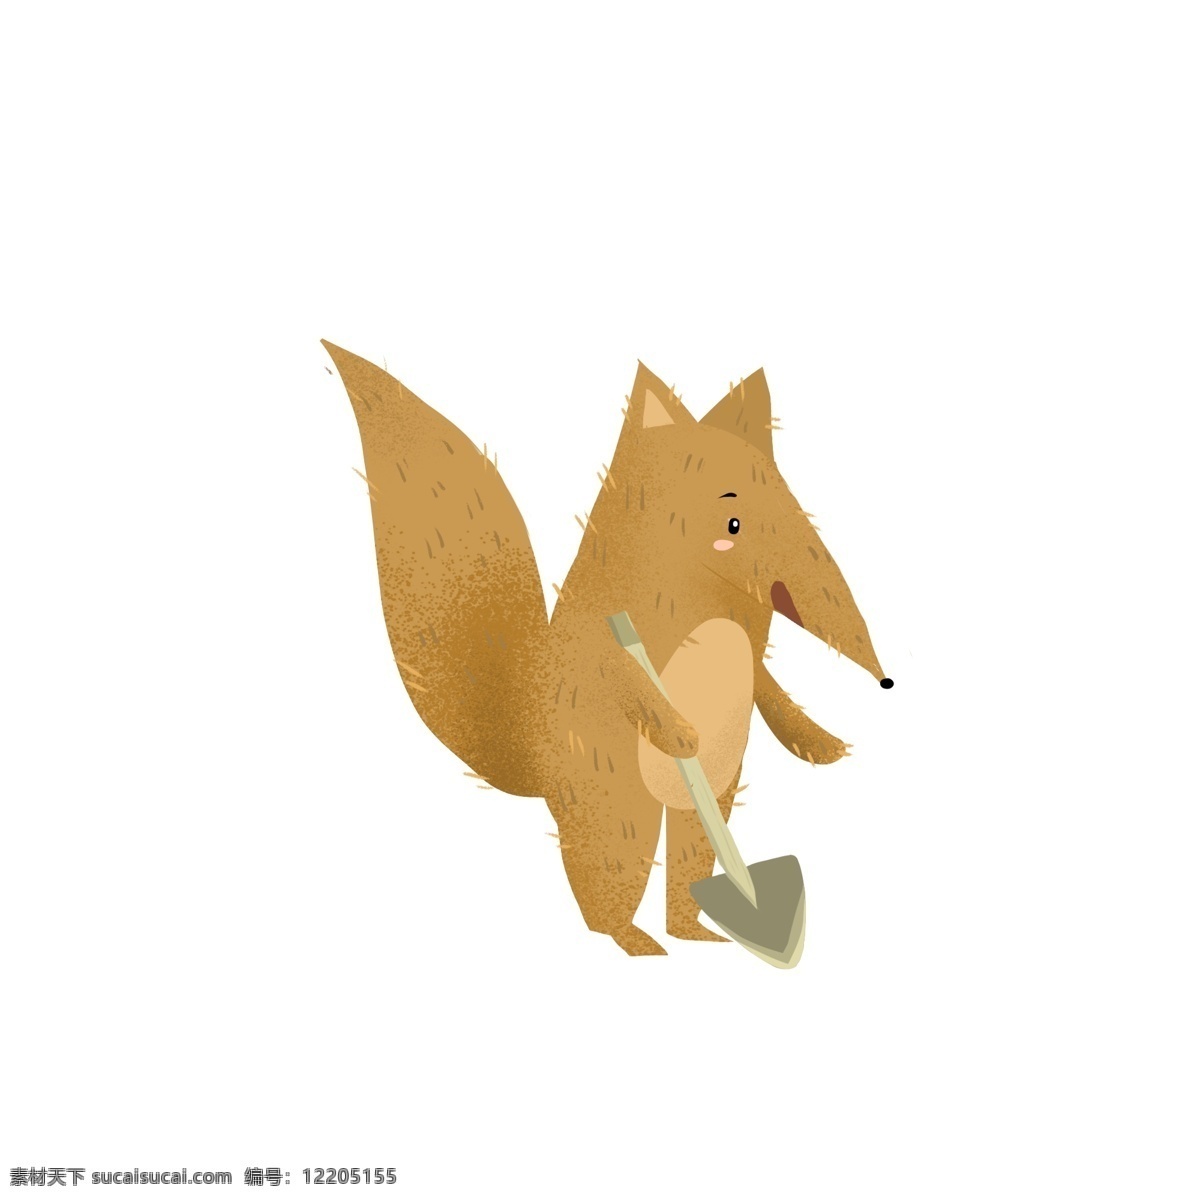 卡通 手绘 铲子 狐狸 创意 动物 插画 森林动物